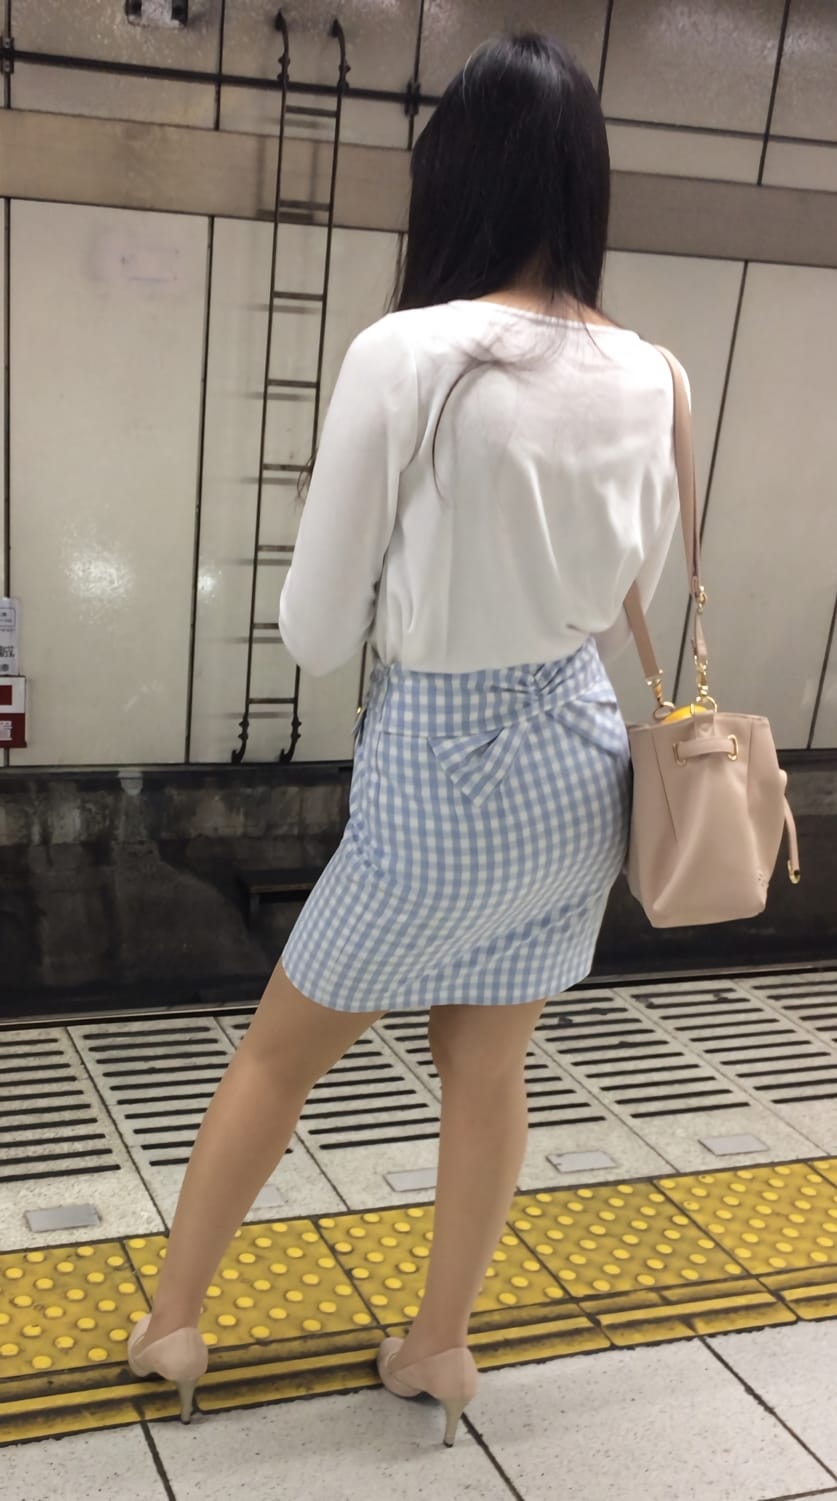 タイトスカートを履いた女性のエロ画像 022